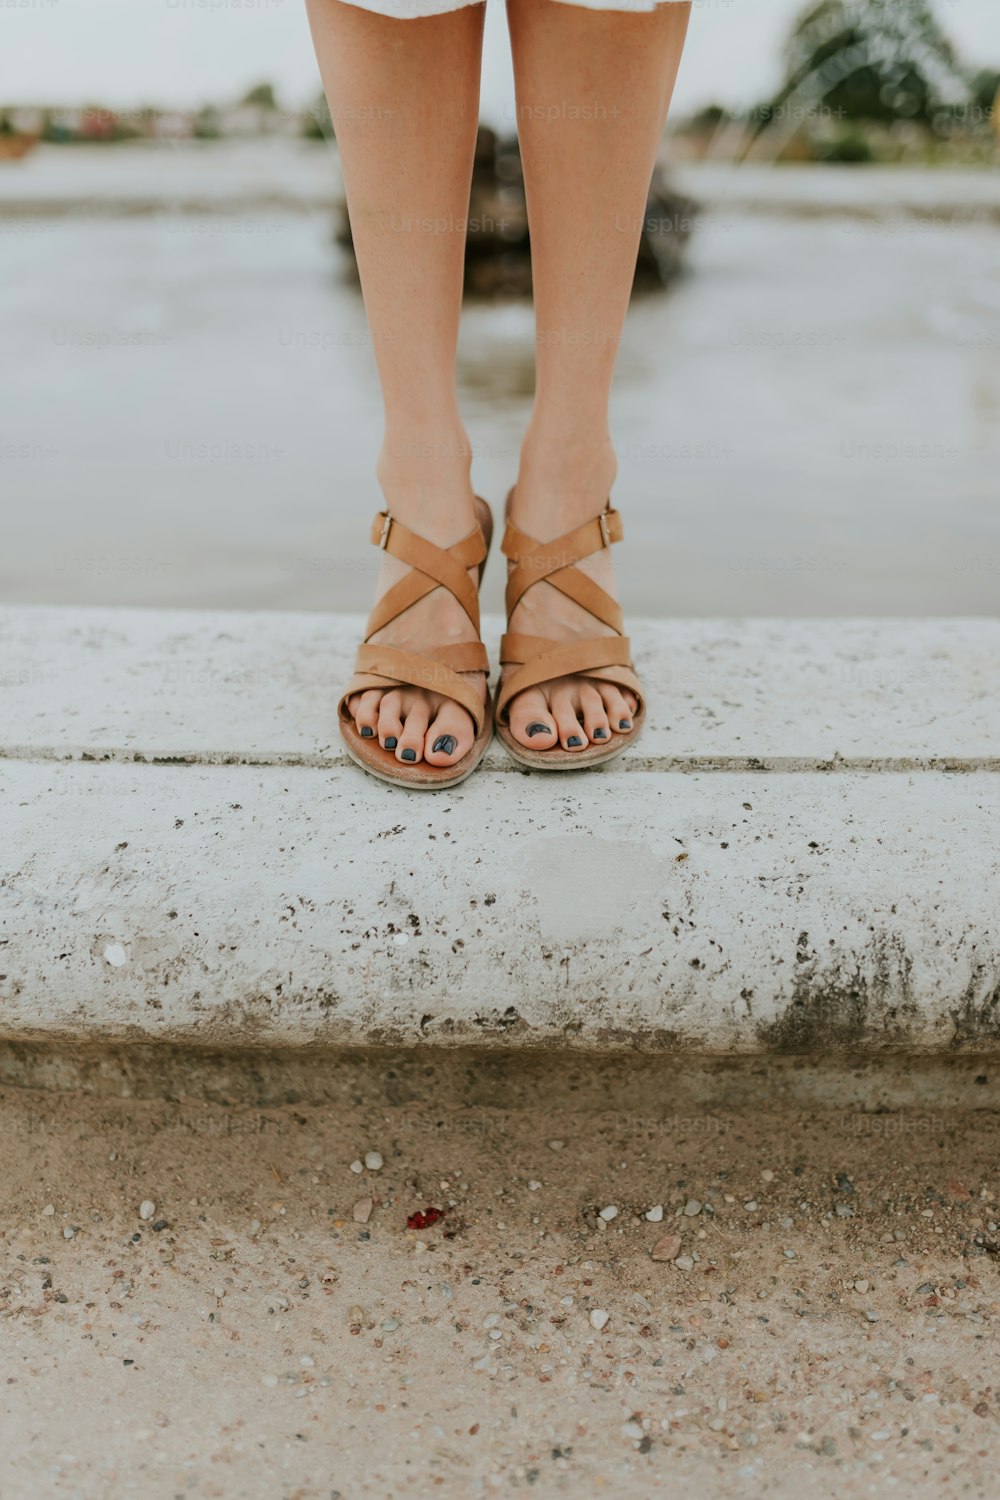 Die Füße einer Frau in Sandalen stehen auf einem Felsvorsprung